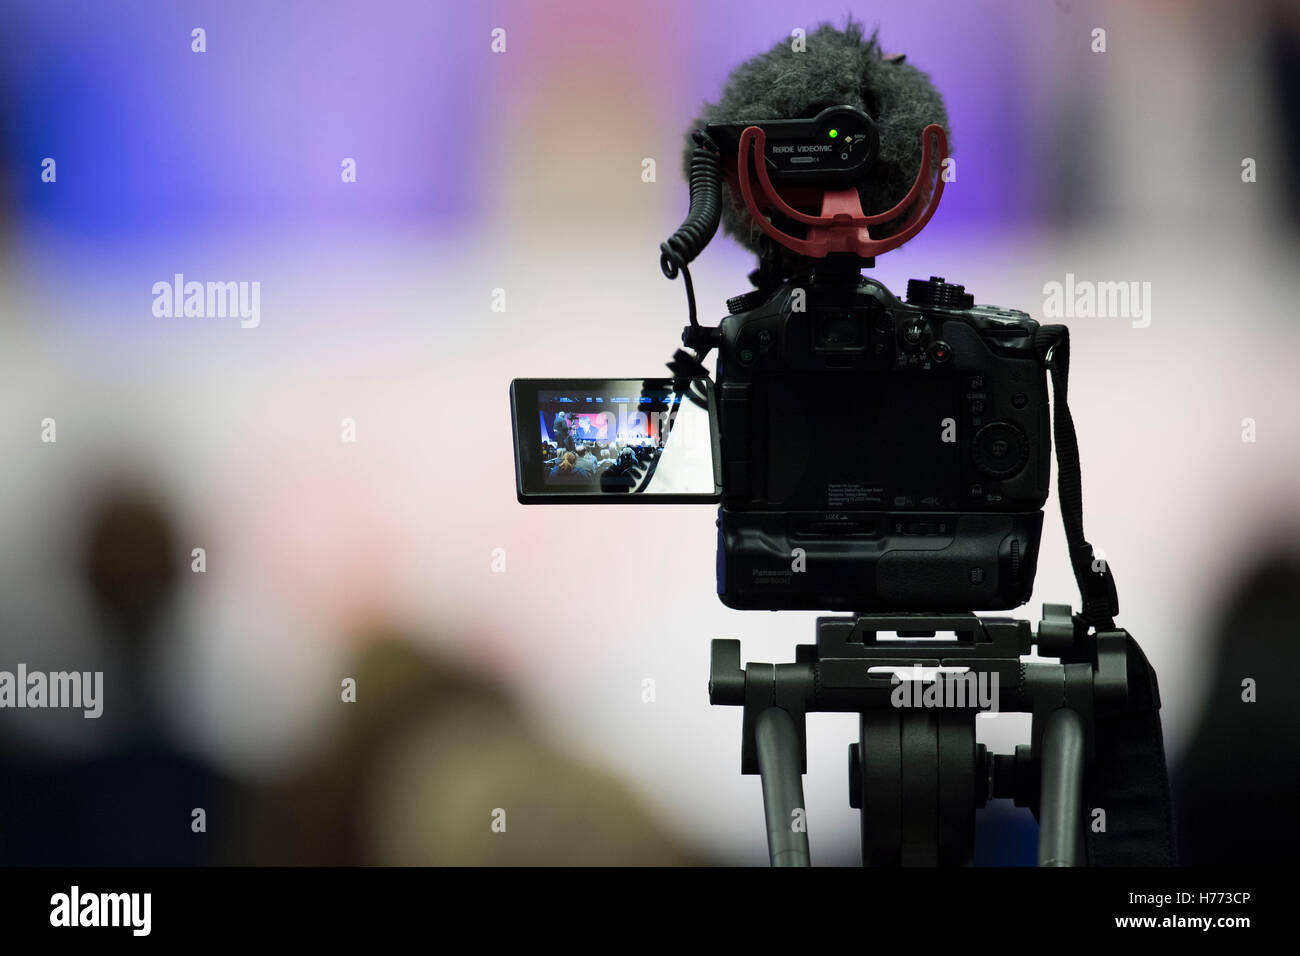 Una slr digital de vídeo sobre un trípode de cámara con micrófono graba vídeo en un evento Foto de stock